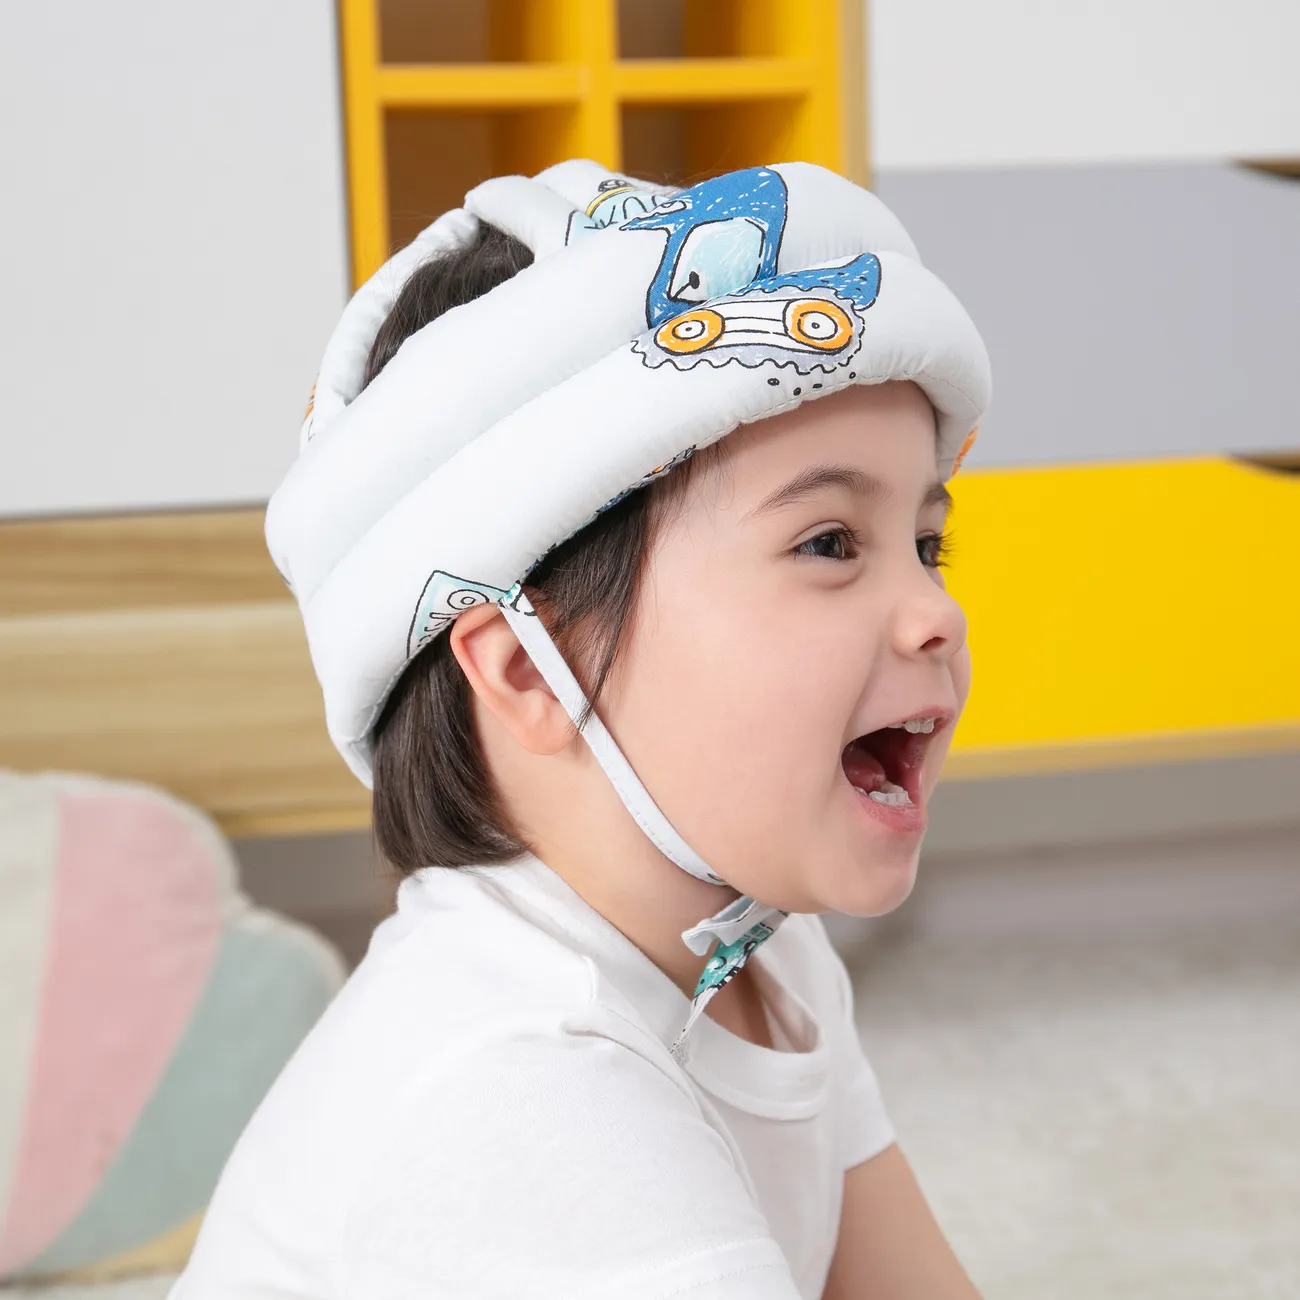 Baby-Kleinkind-Kopfschutzhelm zum Krabbeln, Gehen, Kopfschutz, Anti-Kollisions-Schnürkopfkappe hellgrau big image 1